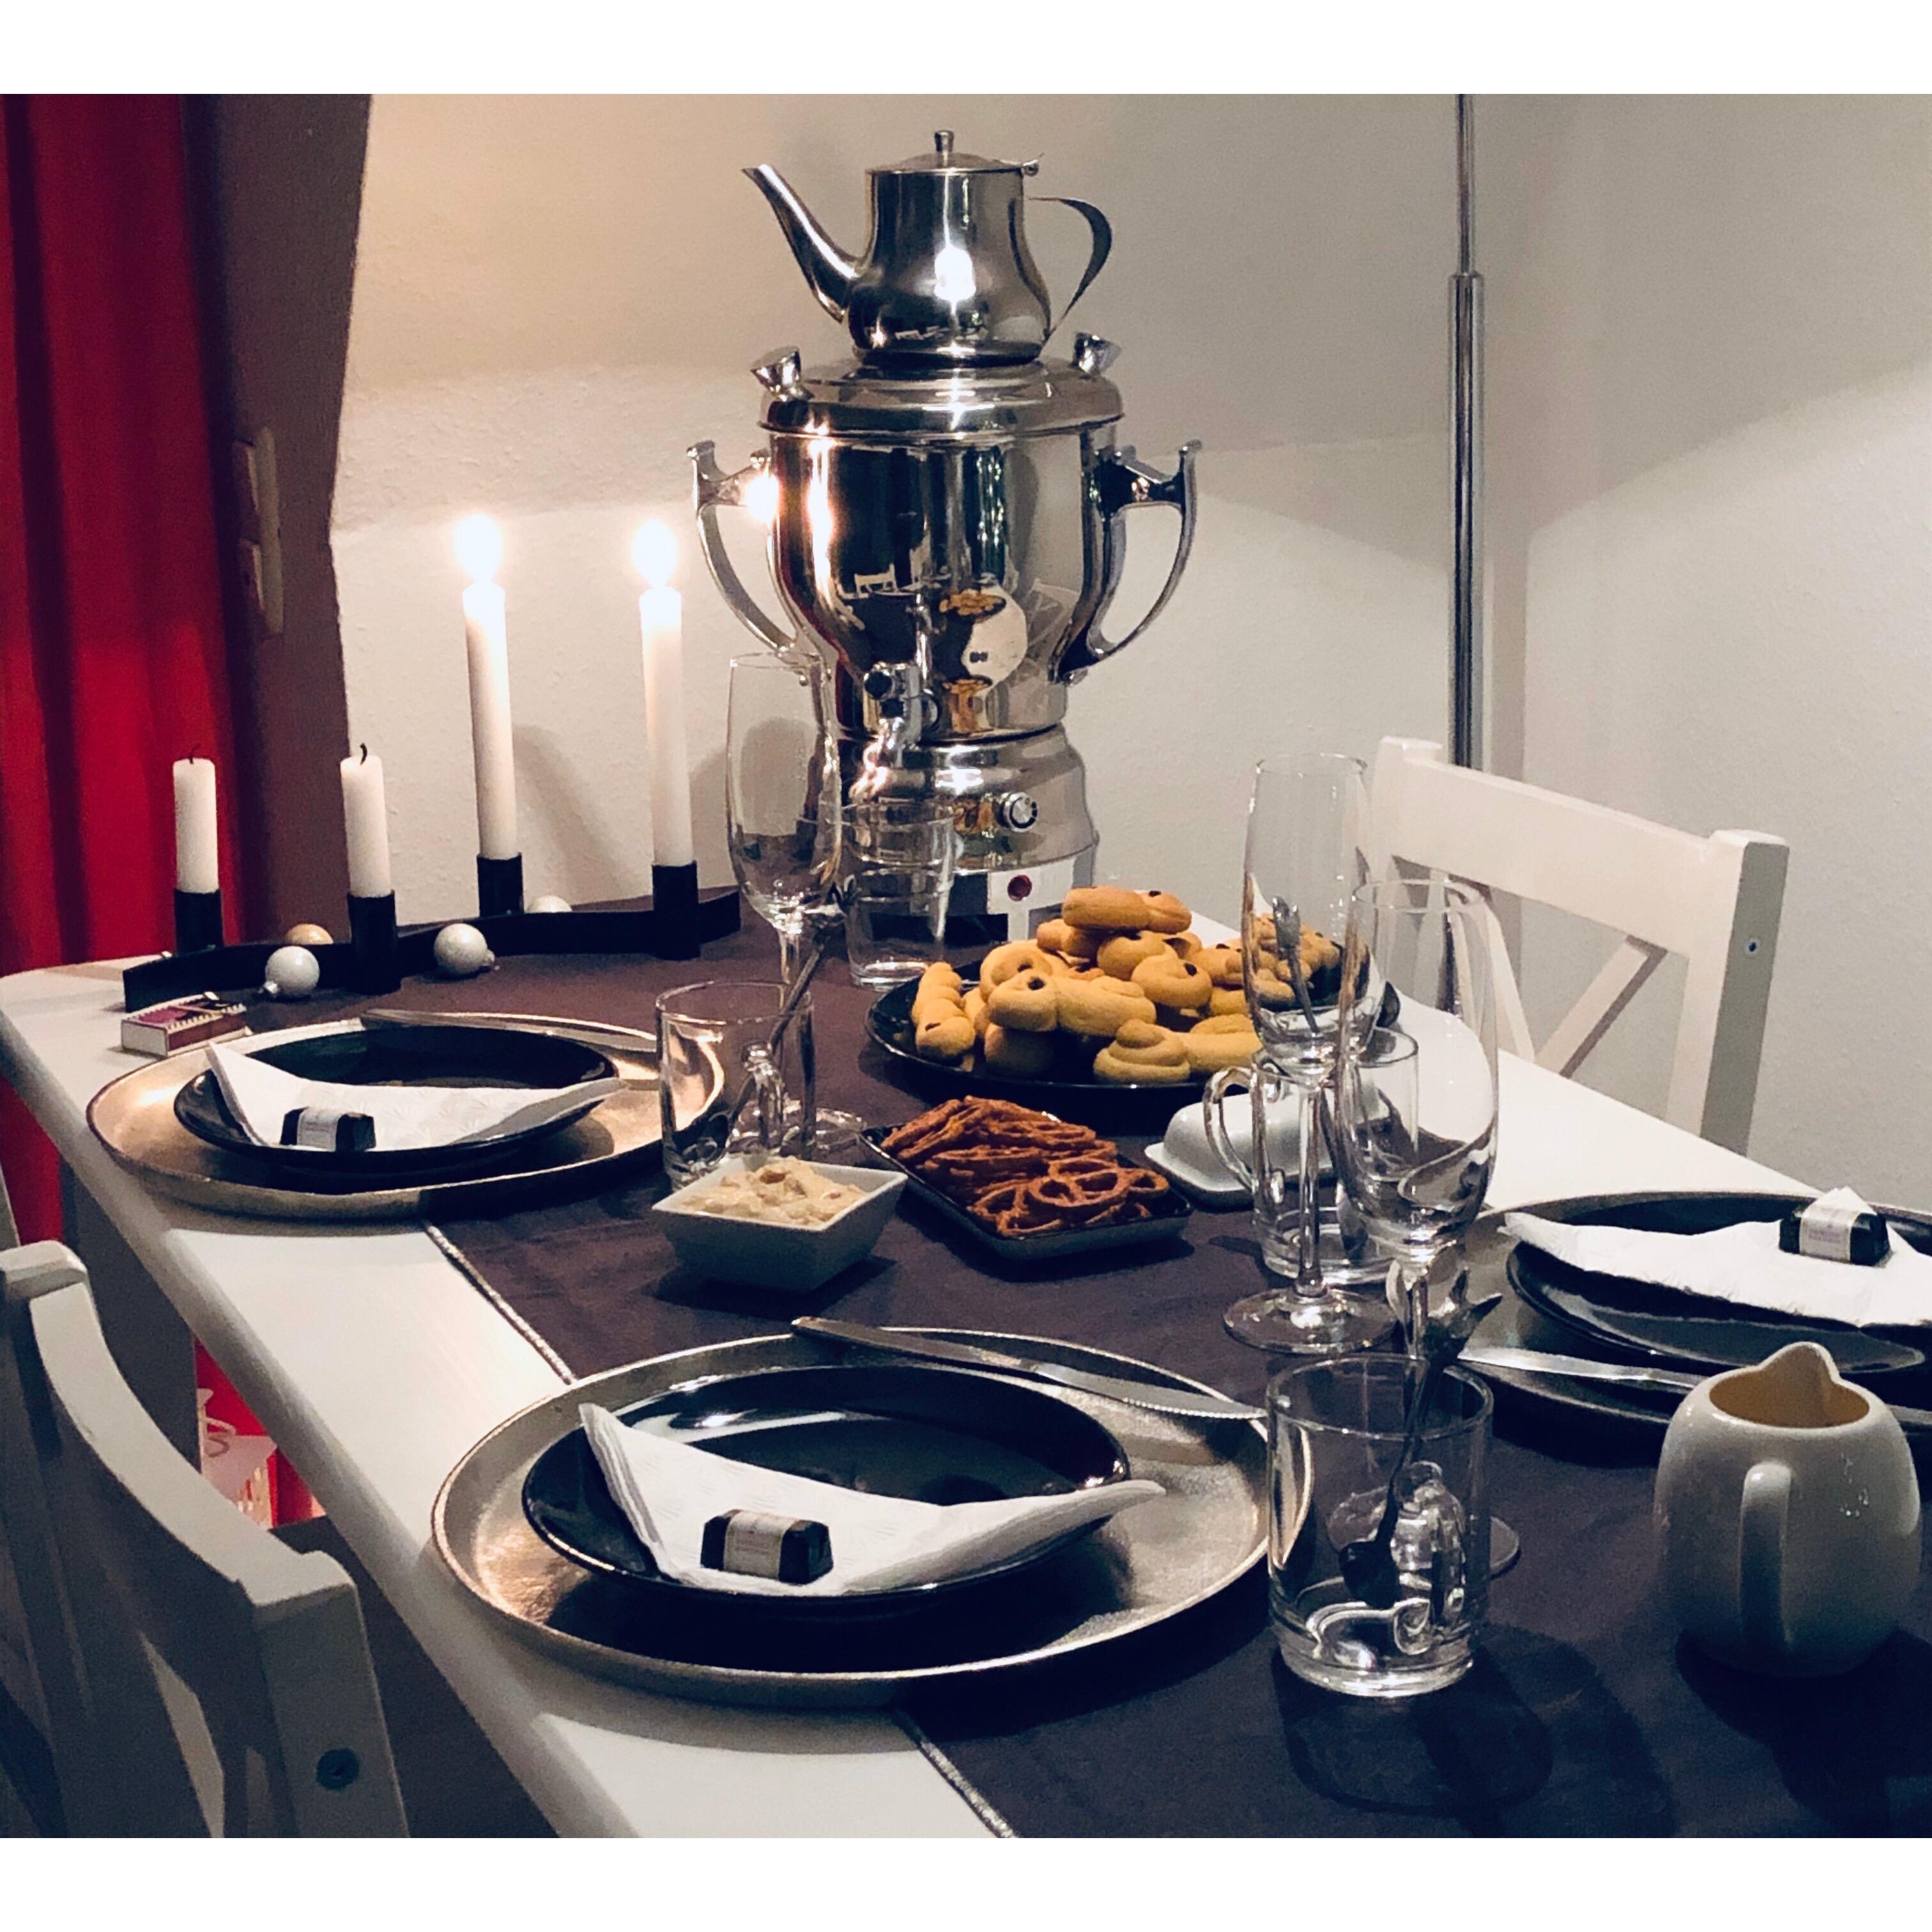 Das auf dem Teller sind schwedische Lyssekatter. Ich freue mich schon wieder auf die gemeinsamen Abende im Advent! 🥰